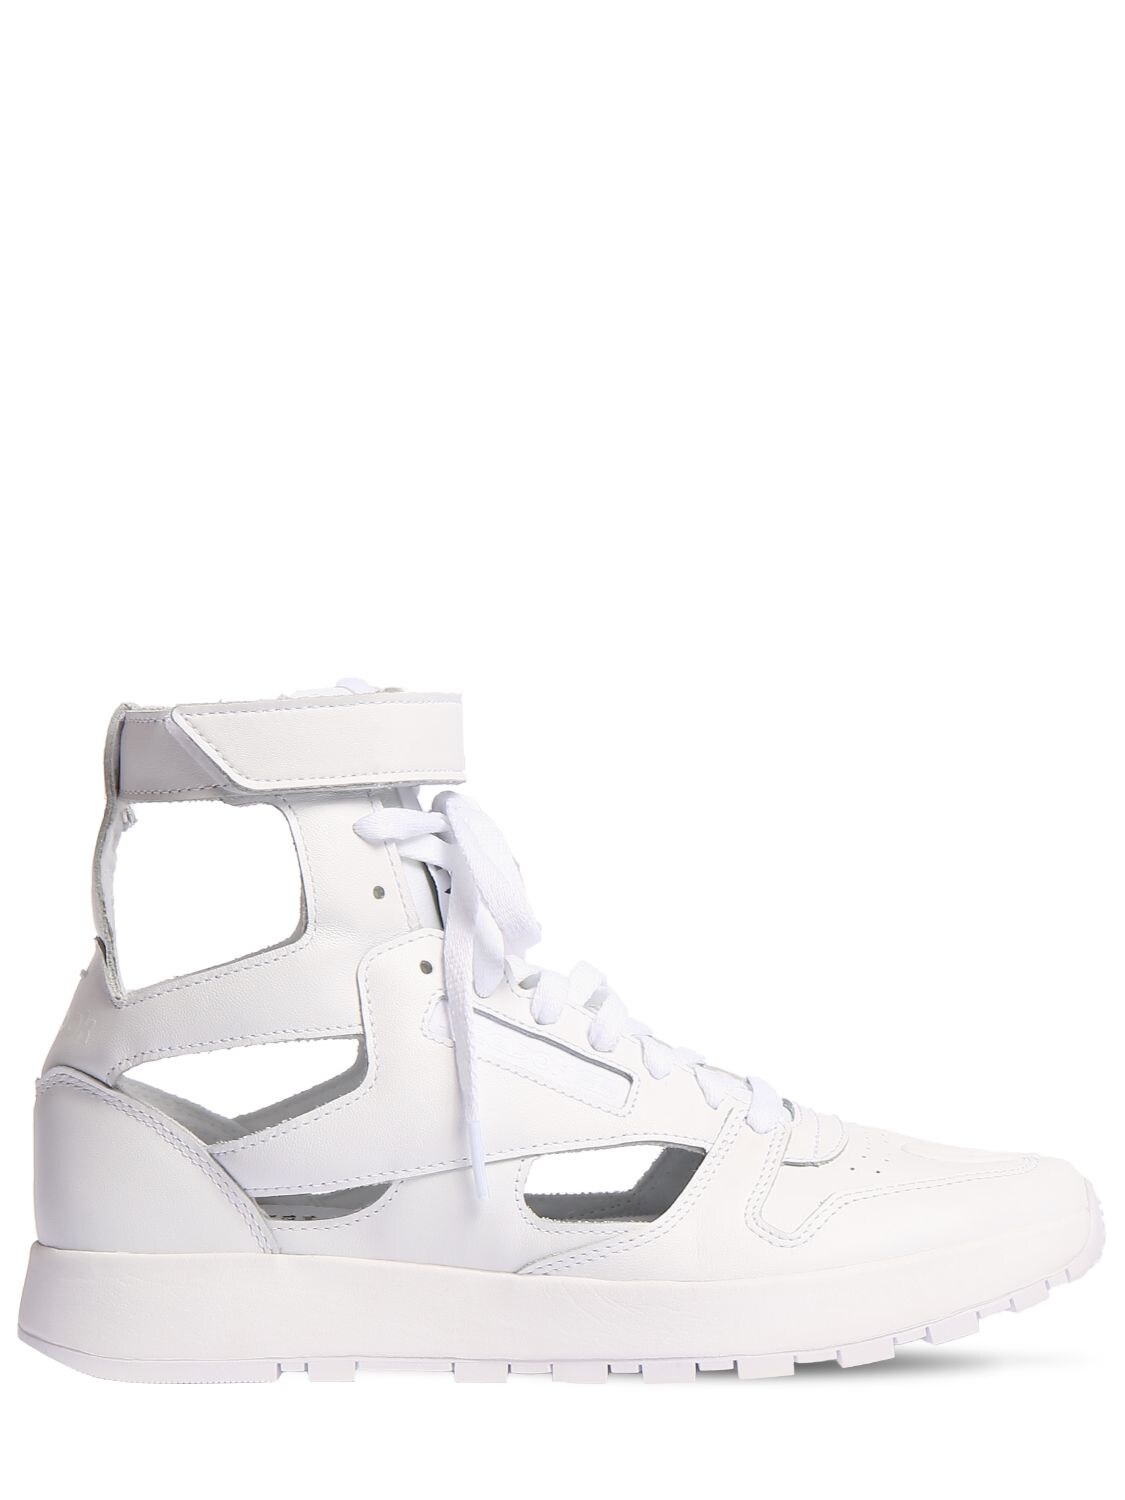 Maison Margiela X Reebok Tabi Sneakers In White